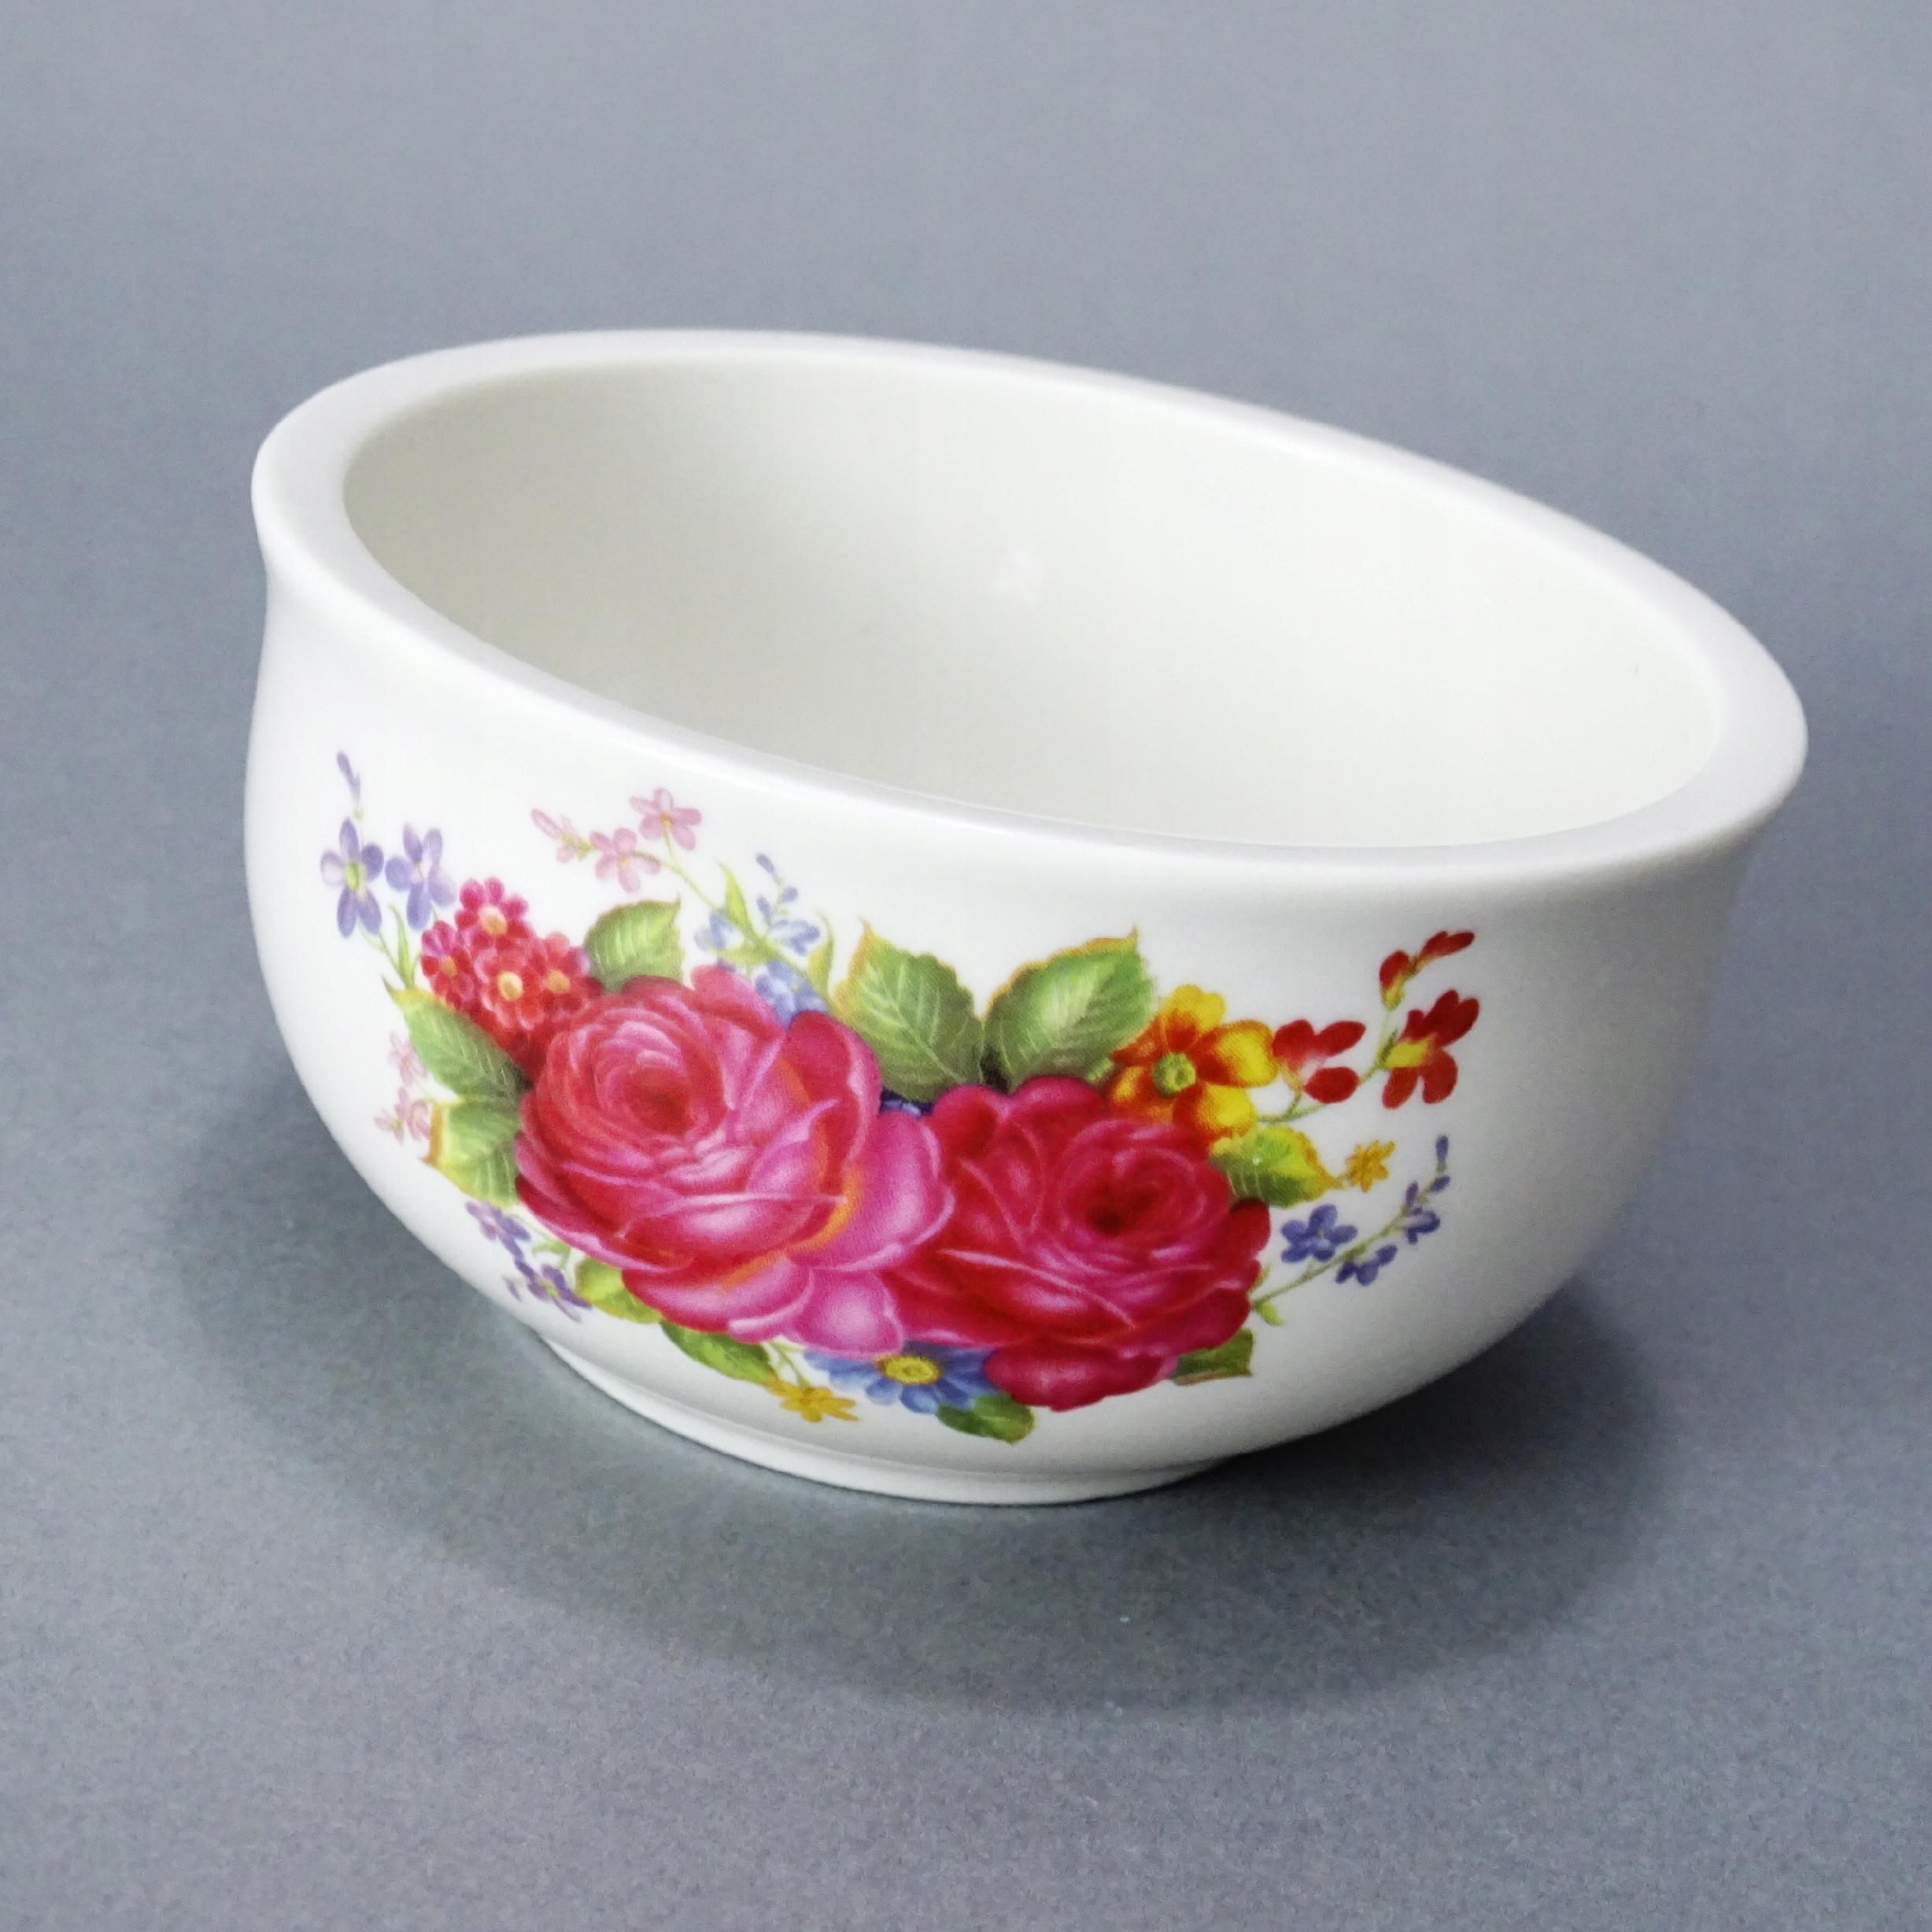 piękna ceramiczna miseczka pojemnik kwiaty